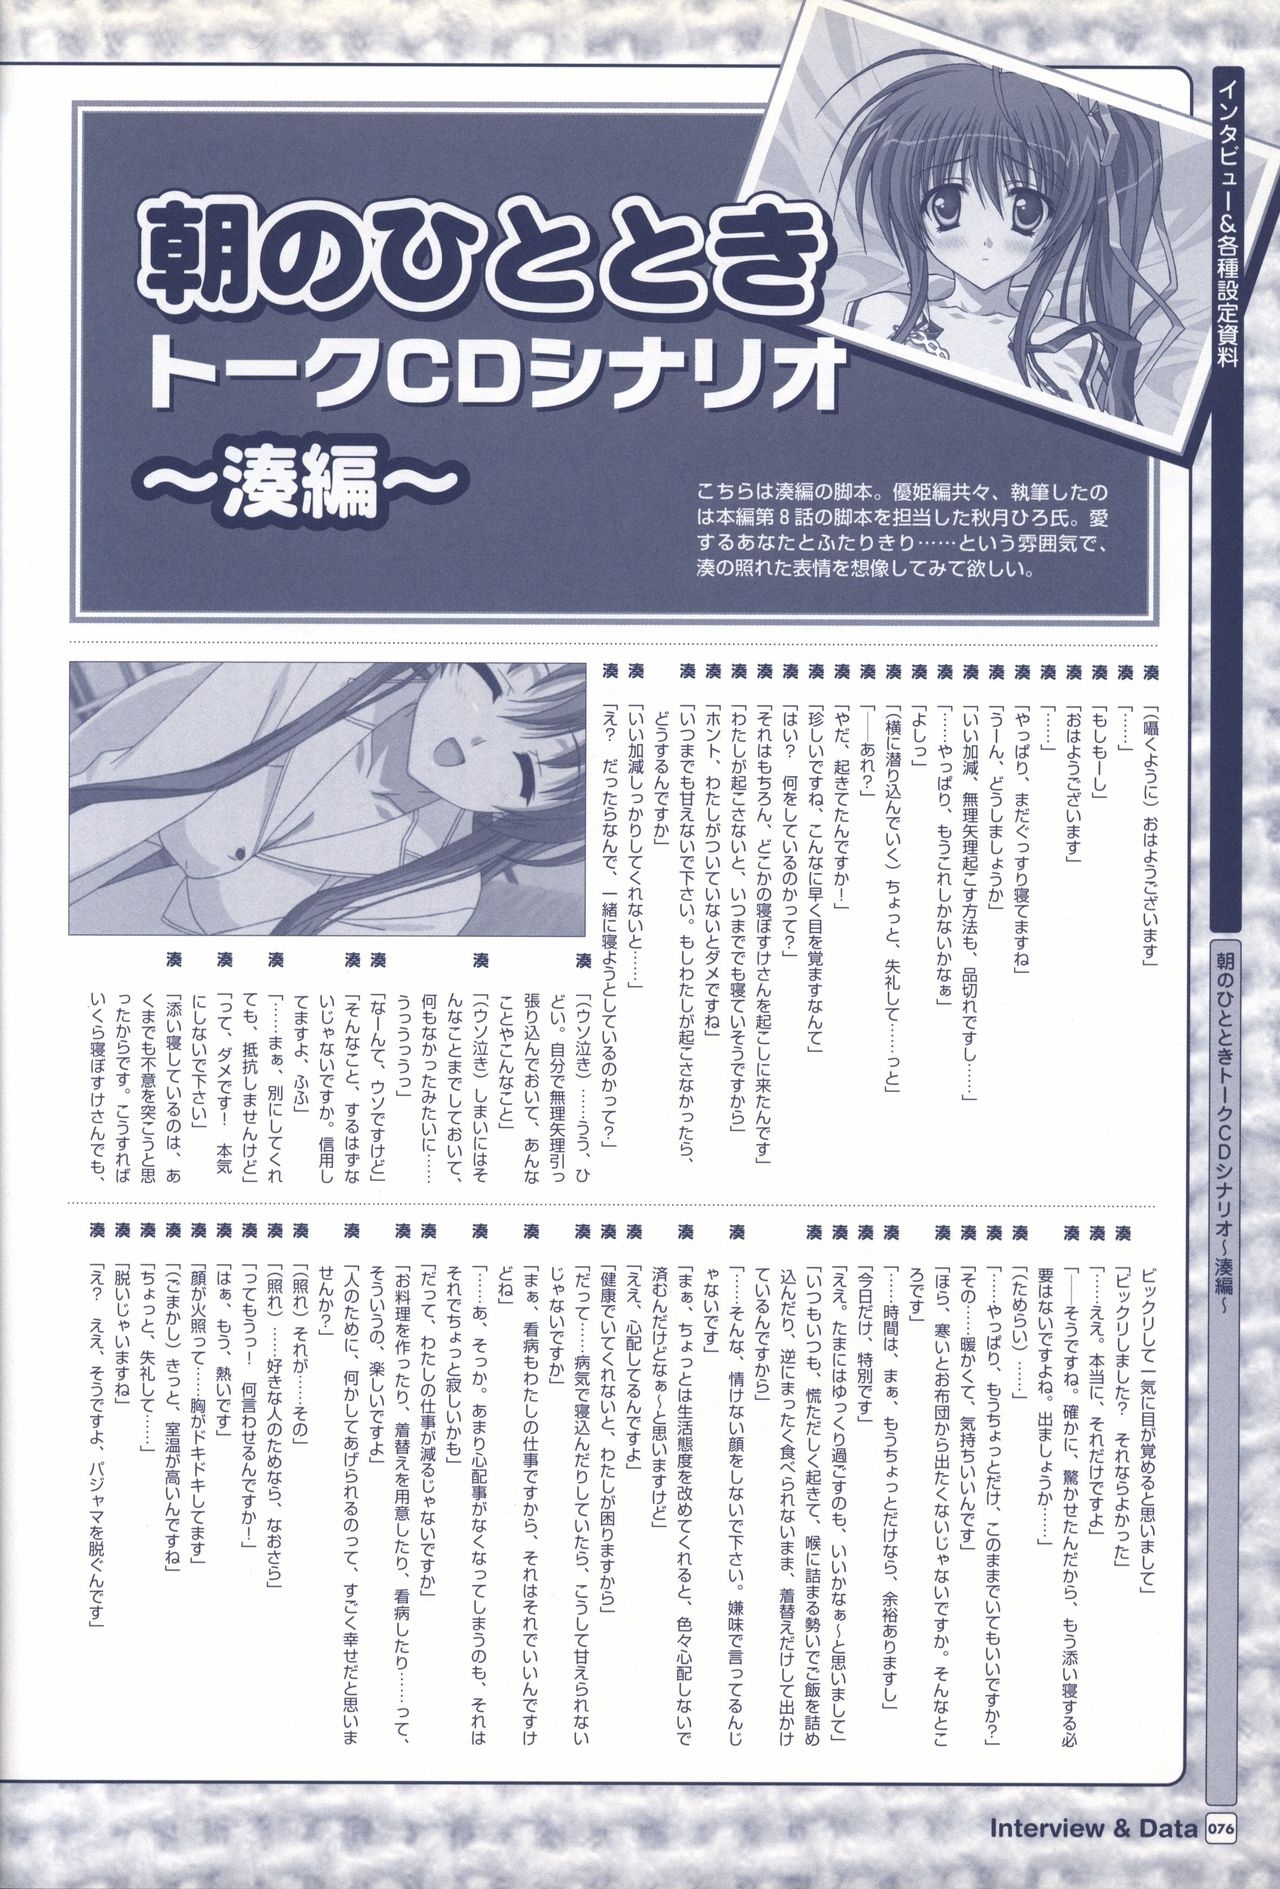 TV ANIME Akaneiro ni Somaru Saka Visual Guide Book 76